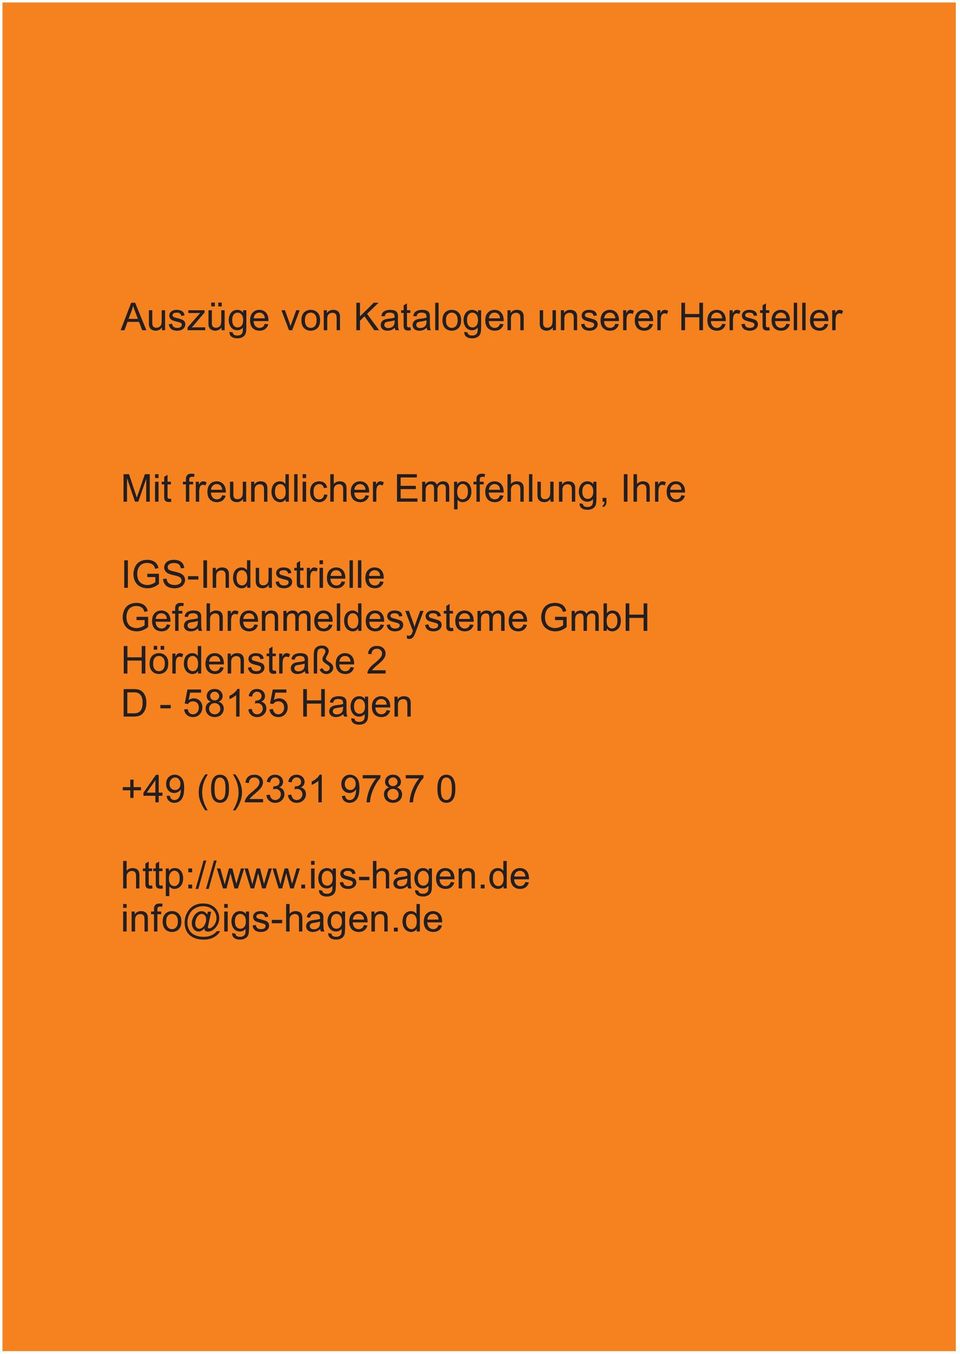 Gefahrenmeldesysteme GmbH Hördenstraße 2 D - 58135